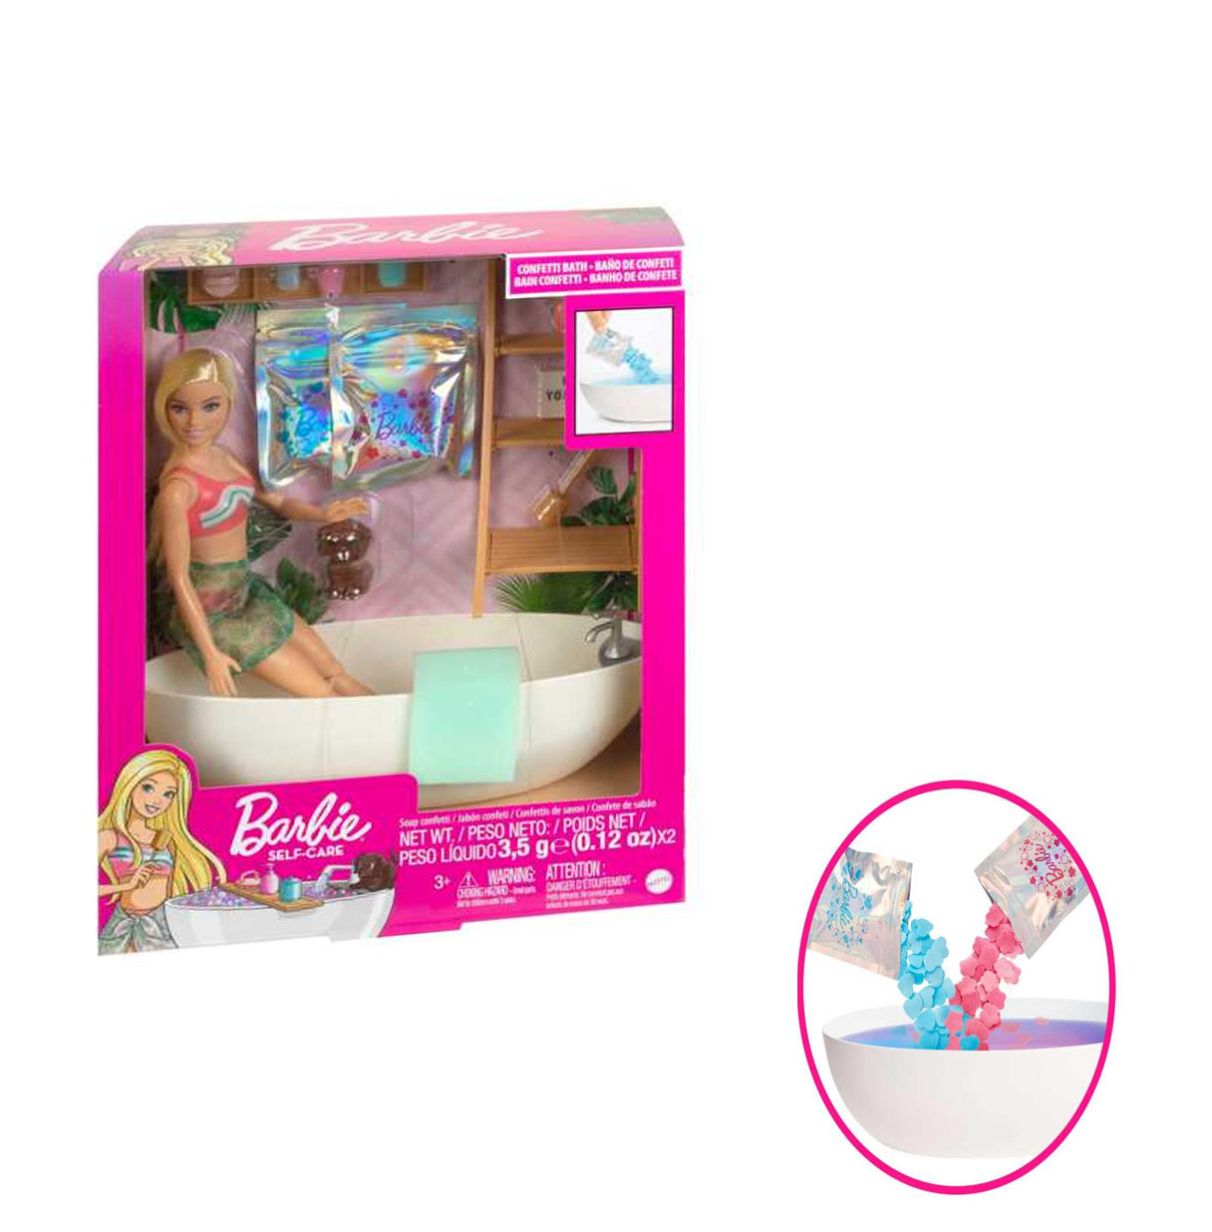 barbie bienestar muñeca rubia con bañera, confeti que cambia de color el agua y accesorios de baño, juguete +3 años (mattel hkt9